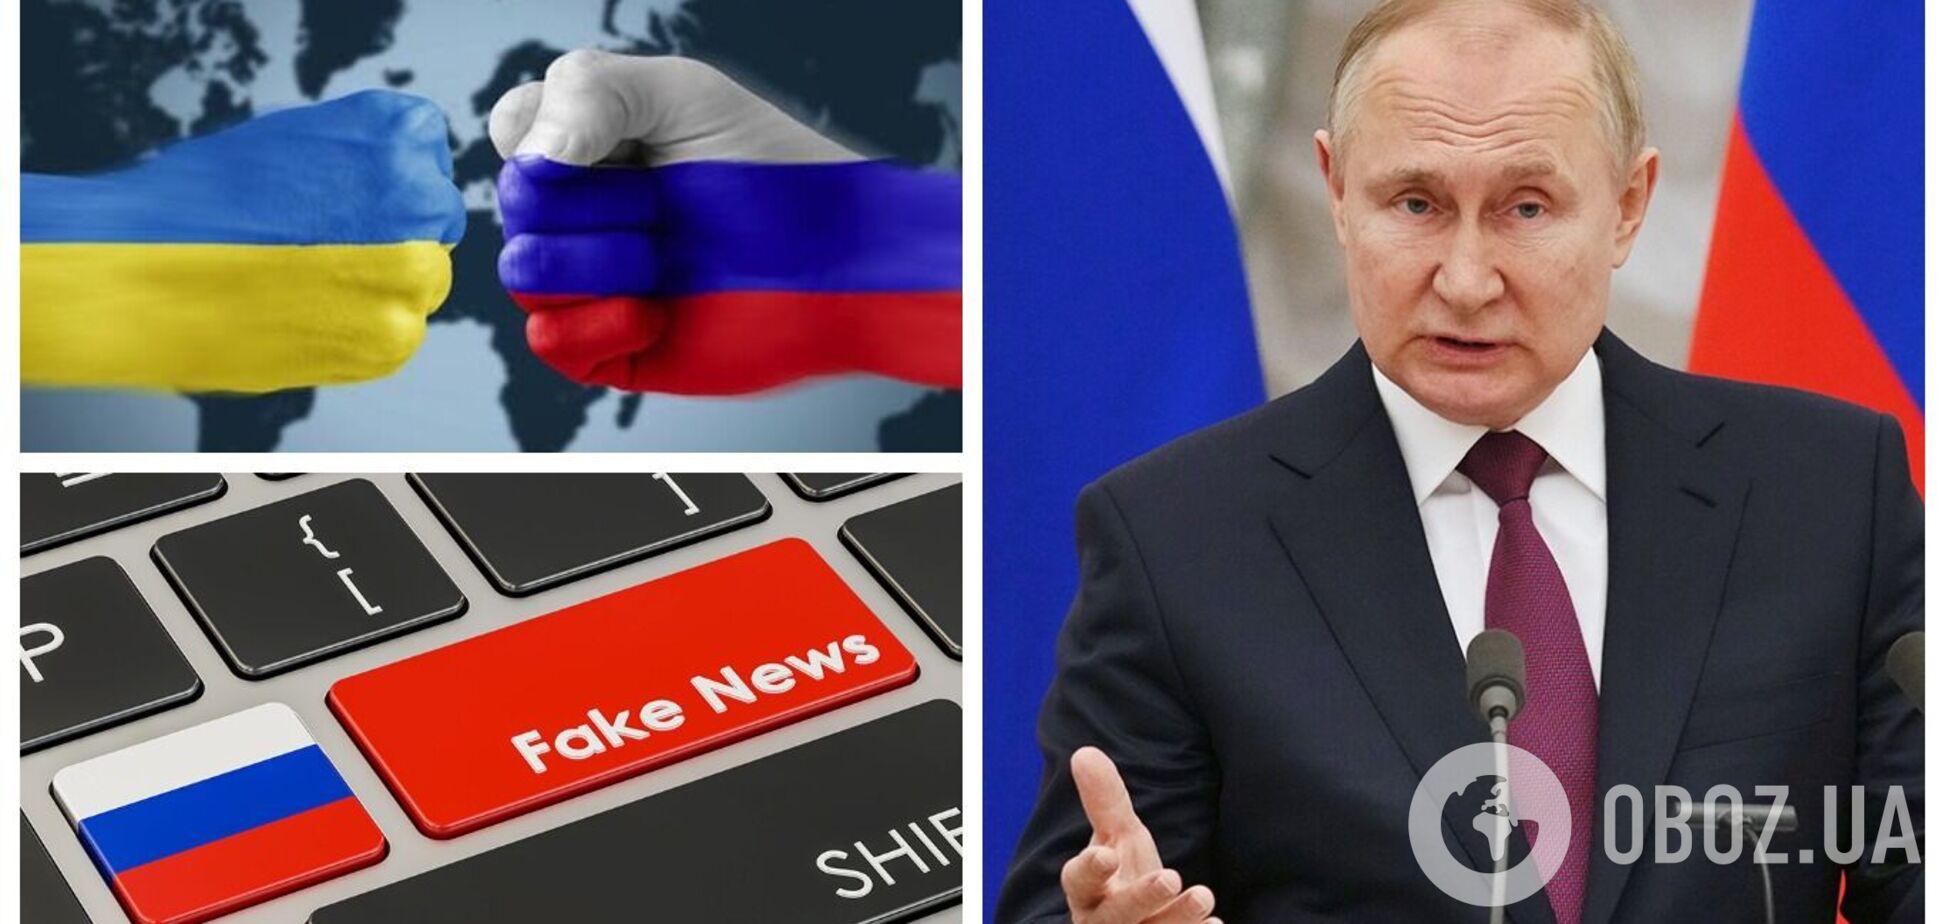 'Війна' Путіна вже почалася по телевізору: на Заході викрили Кремль у брехні про Україну